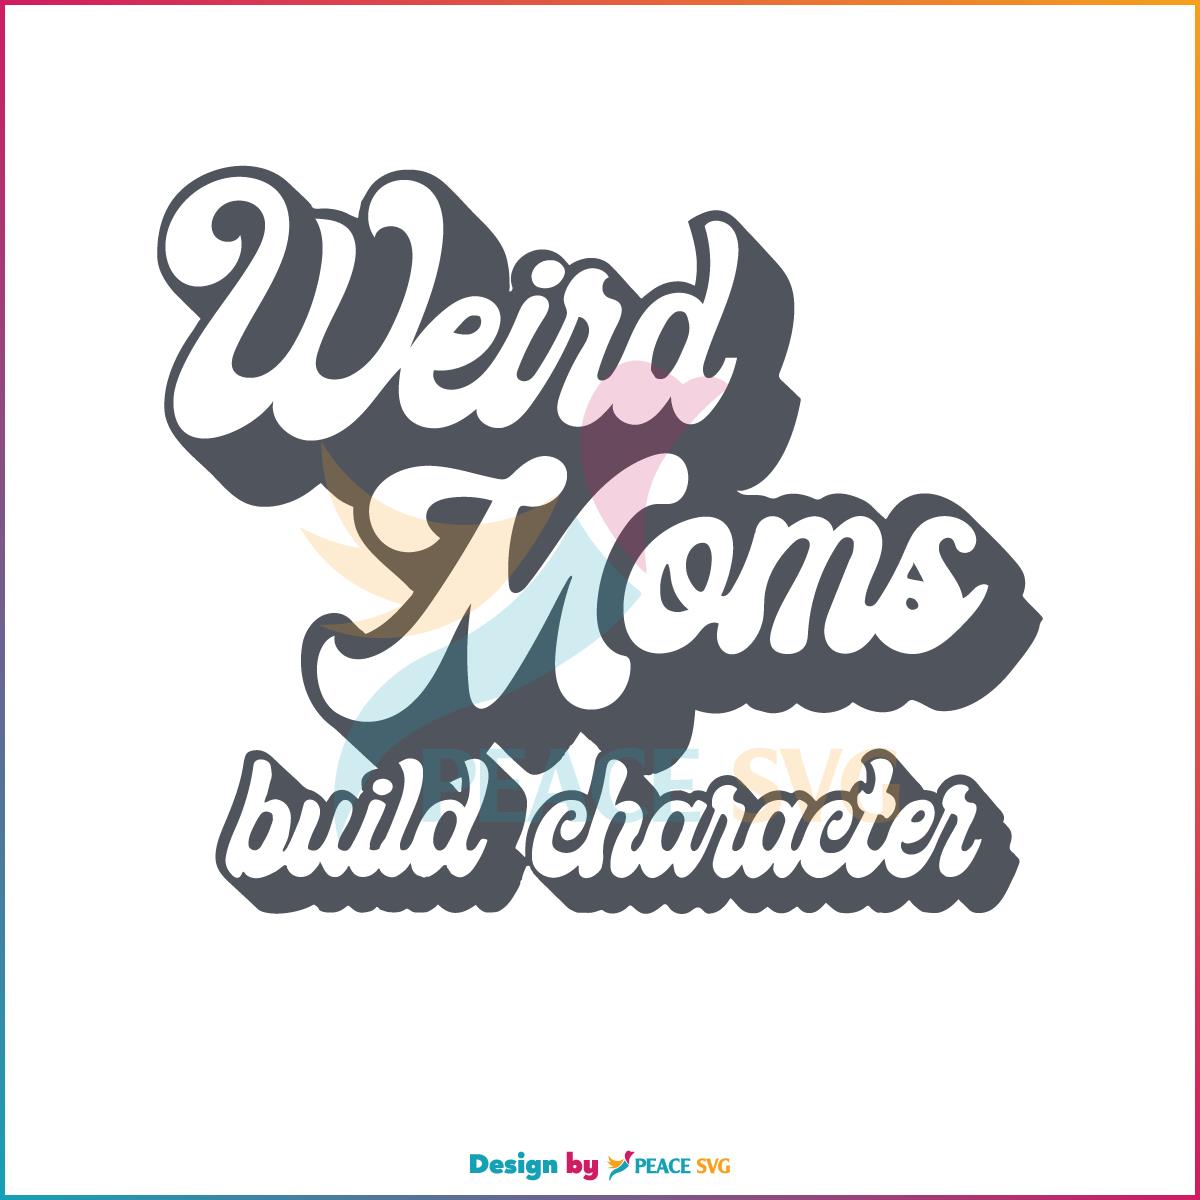 Weird Moms Build Character Retro Weird Moms SVG, Cutting Files